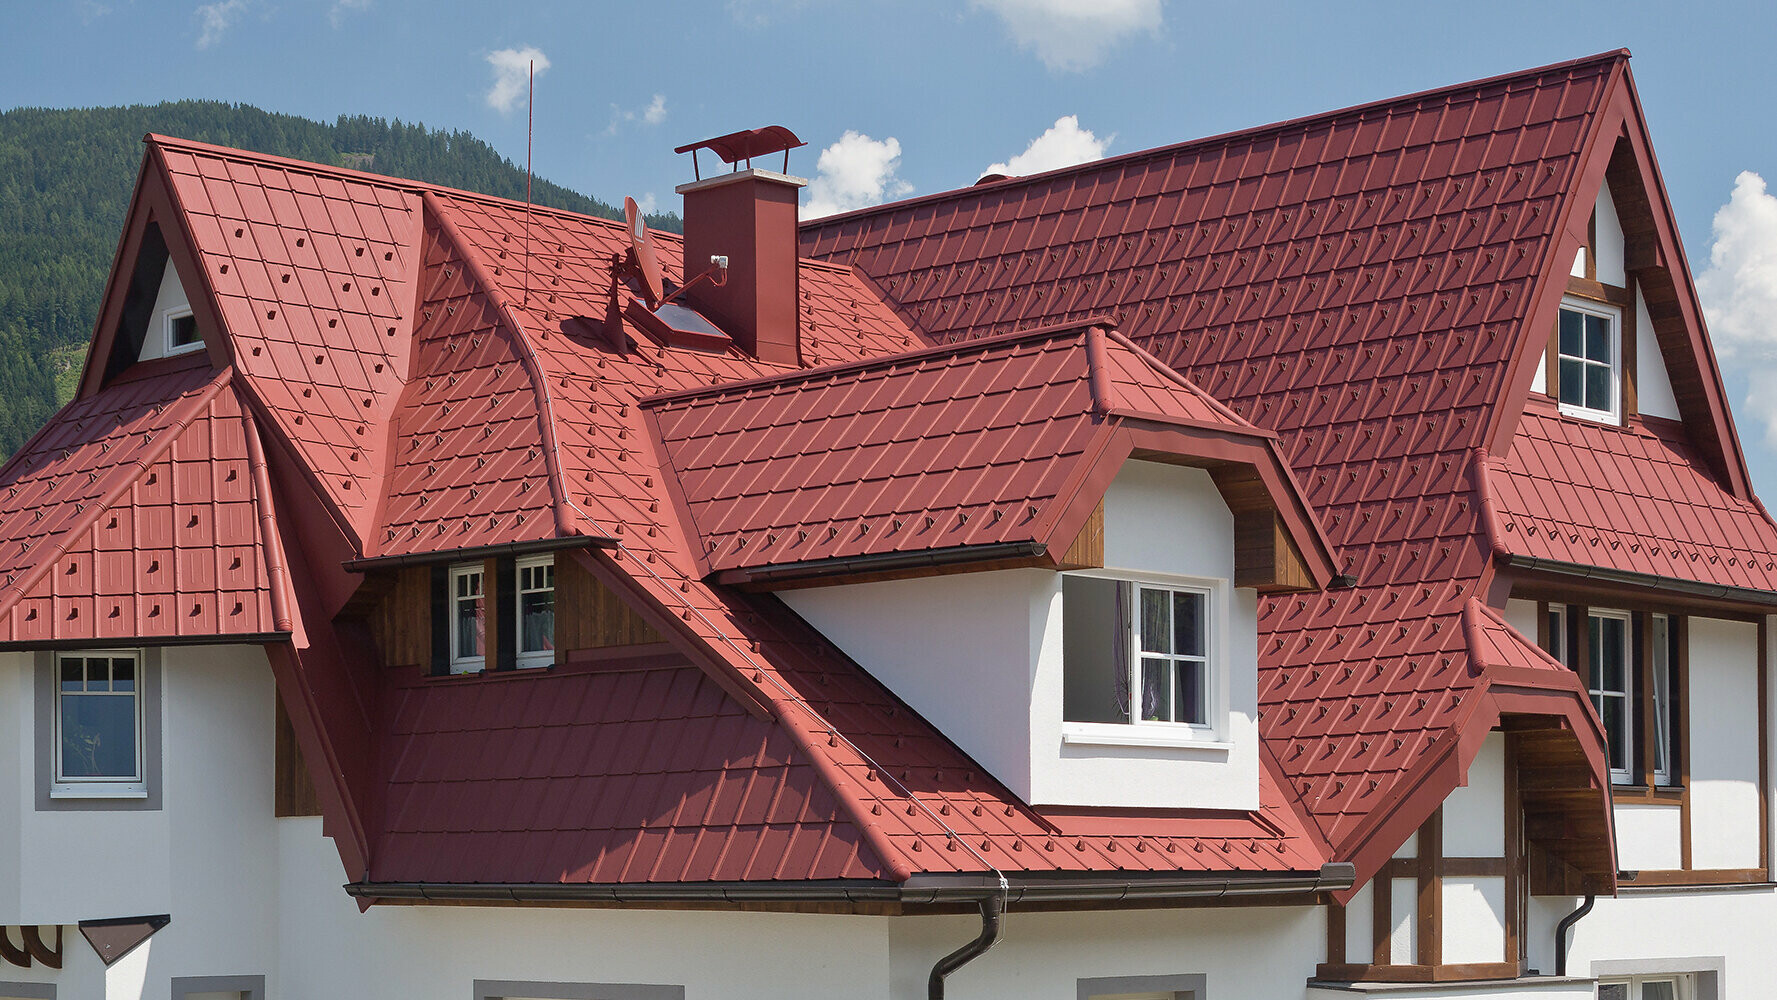 Einfamilienhaus mit verwinkelter Dachlandschaft, vielen Details und Gauben; Eingedeckt mit der PREFA Dachplatte in Oxydrot.